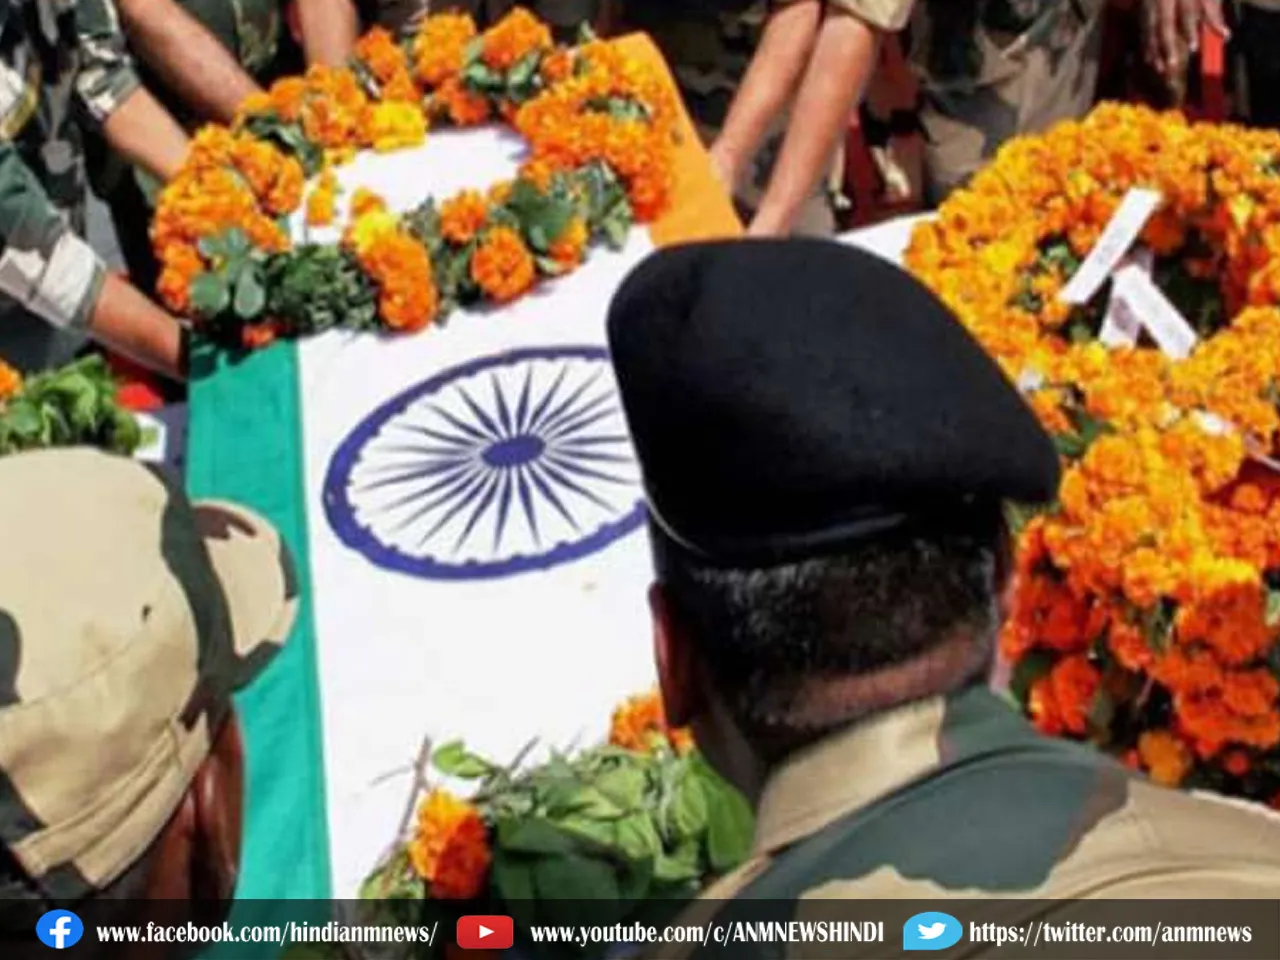 West Bengal News: सेना के दो जवान शहीद